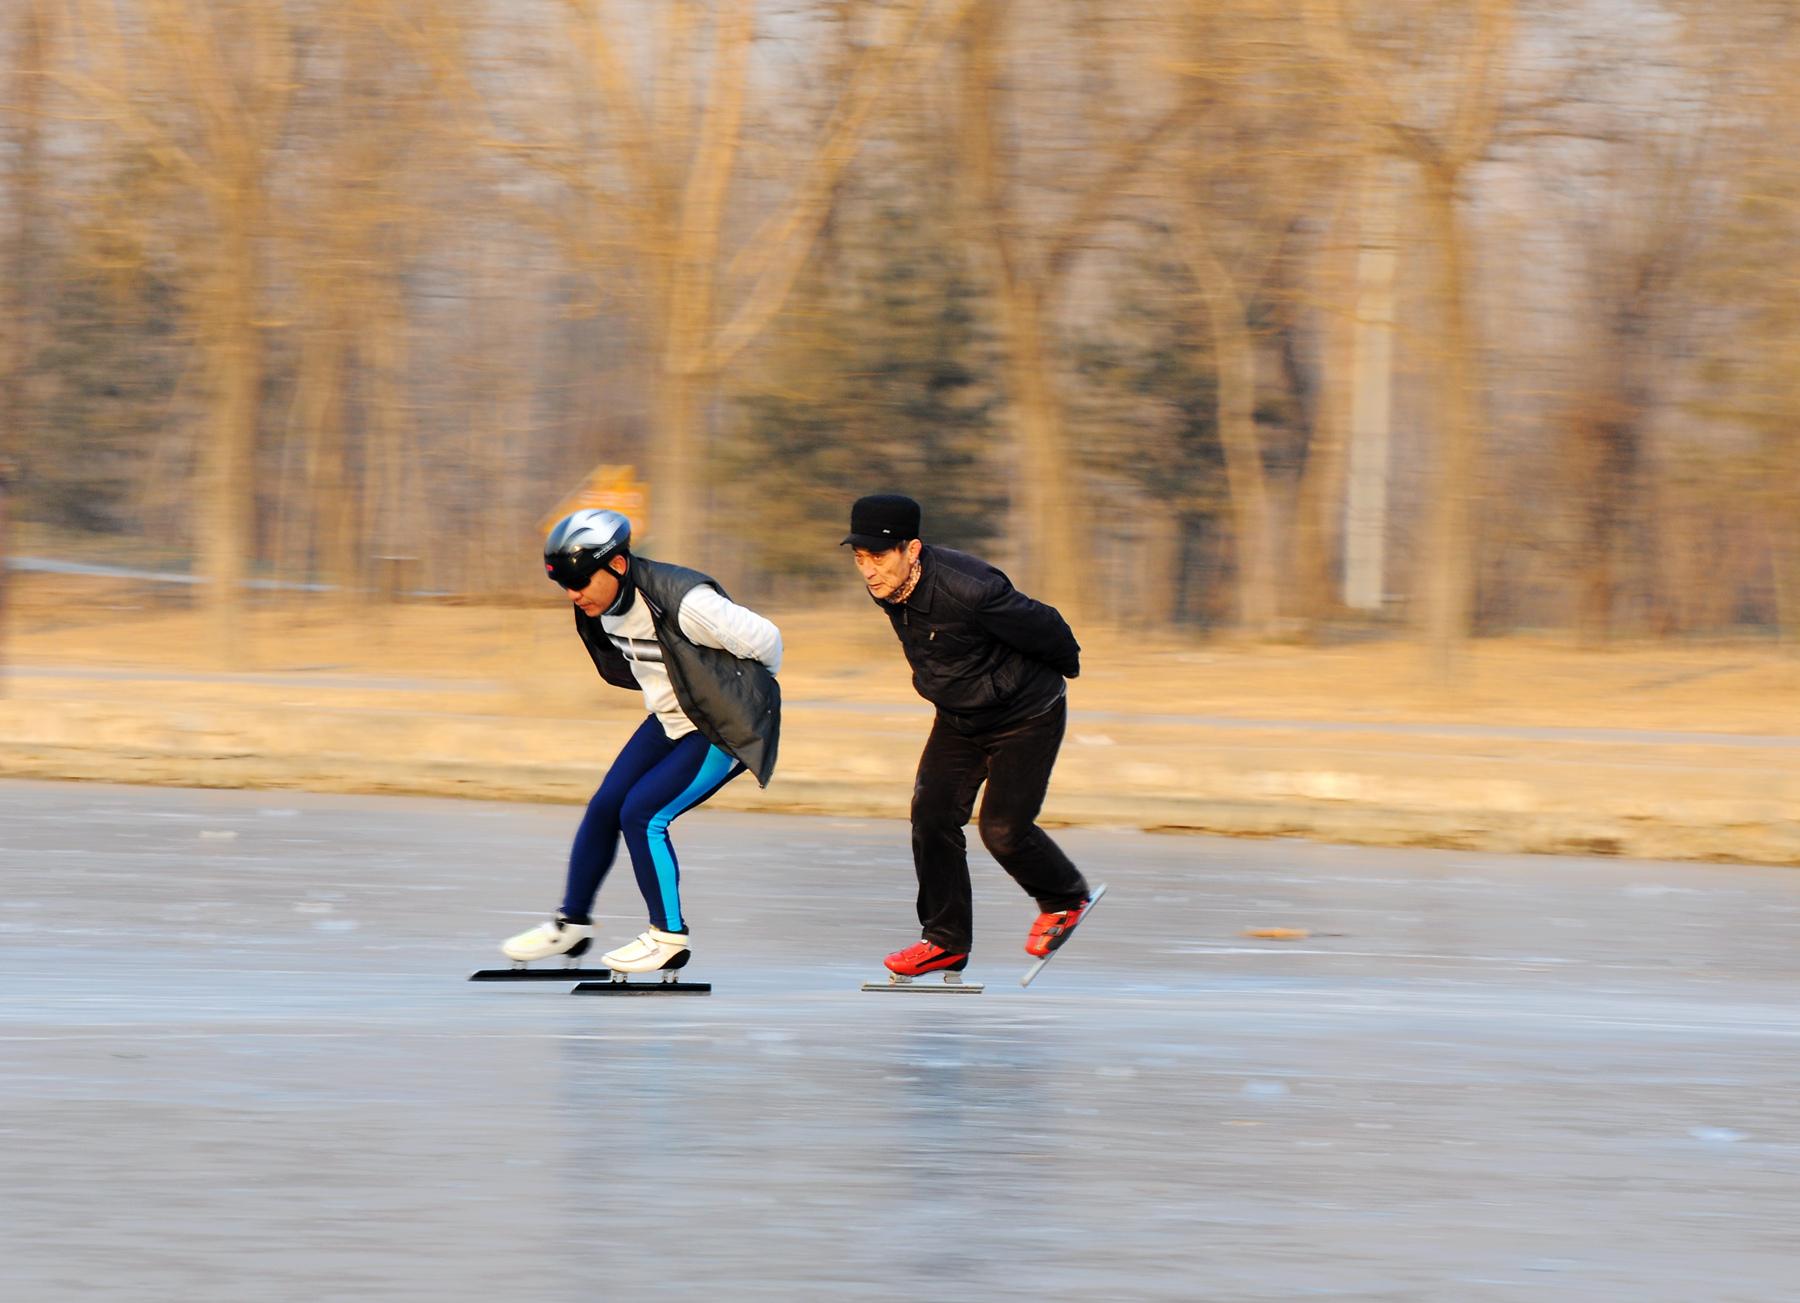 北京冬奥花样滑冰女单短节目，俄罗斯奥运队选手瓦利耶娃晋级